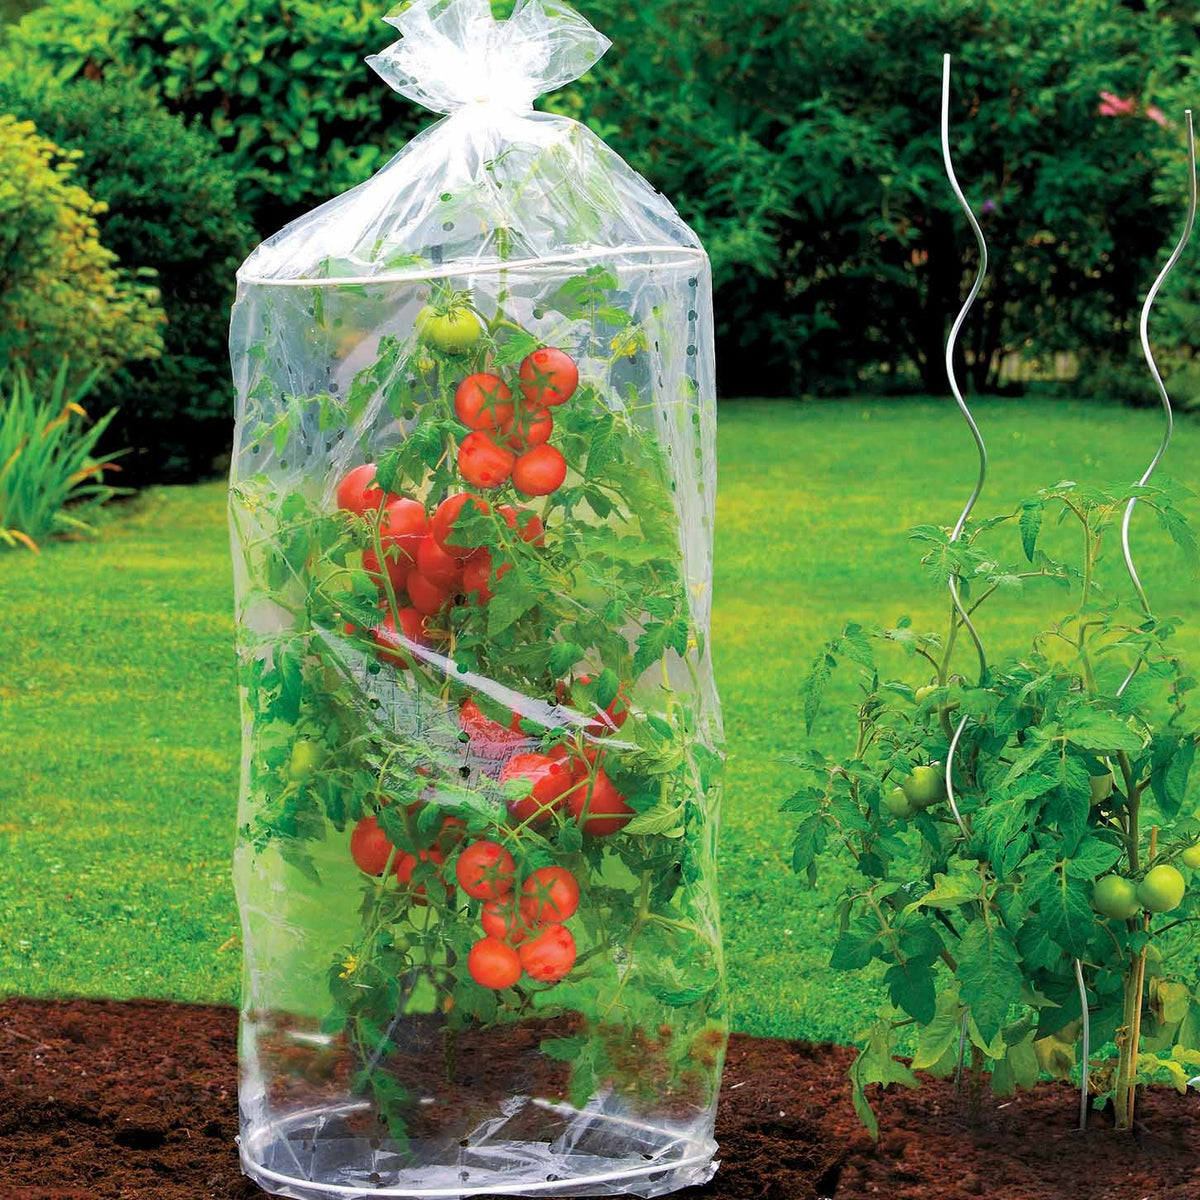 Housse de protection pour tomates - Jardin et Saisons